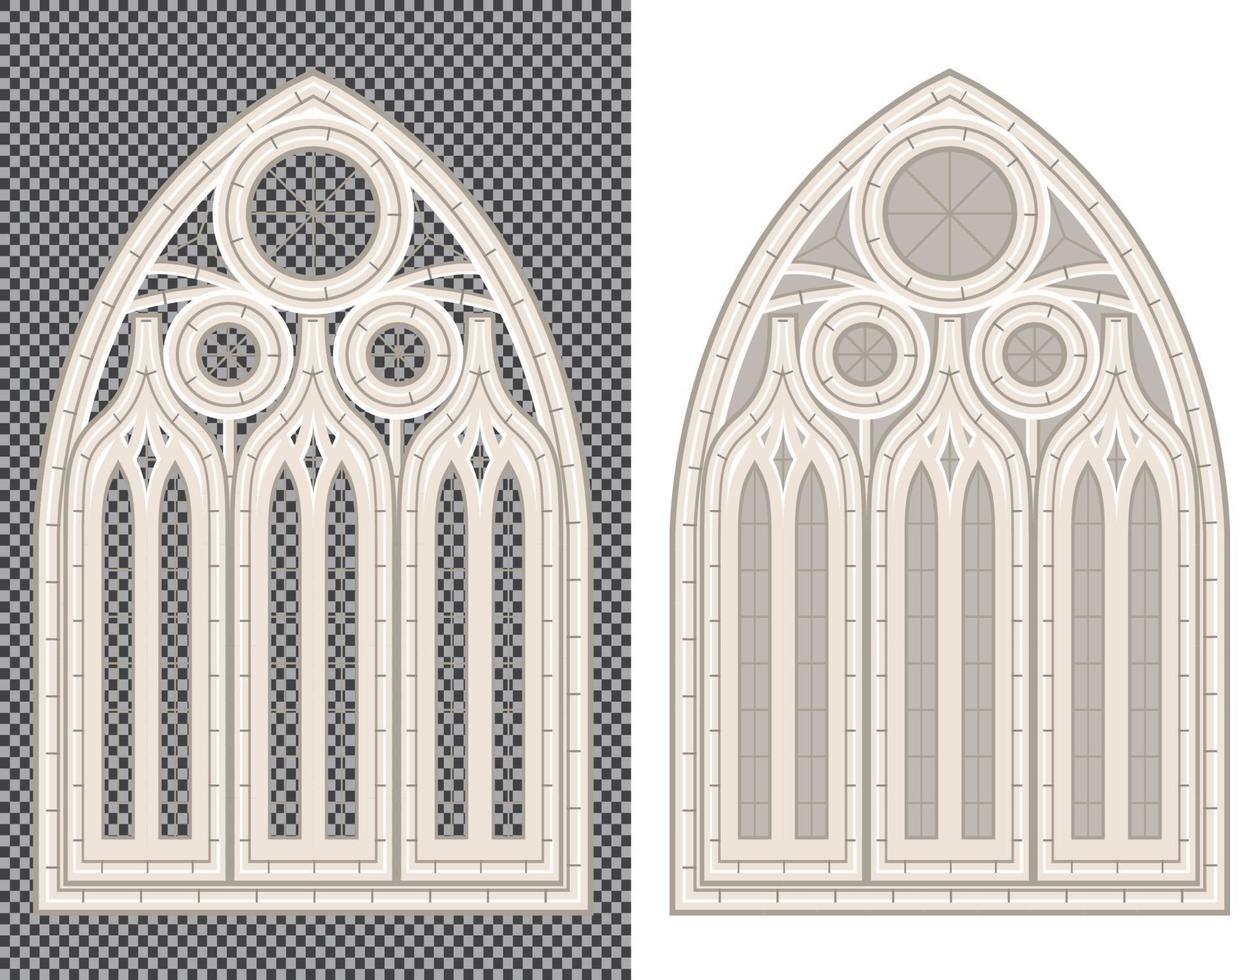 ventana medieval gótica sobre fondo blanco y transparente. vector